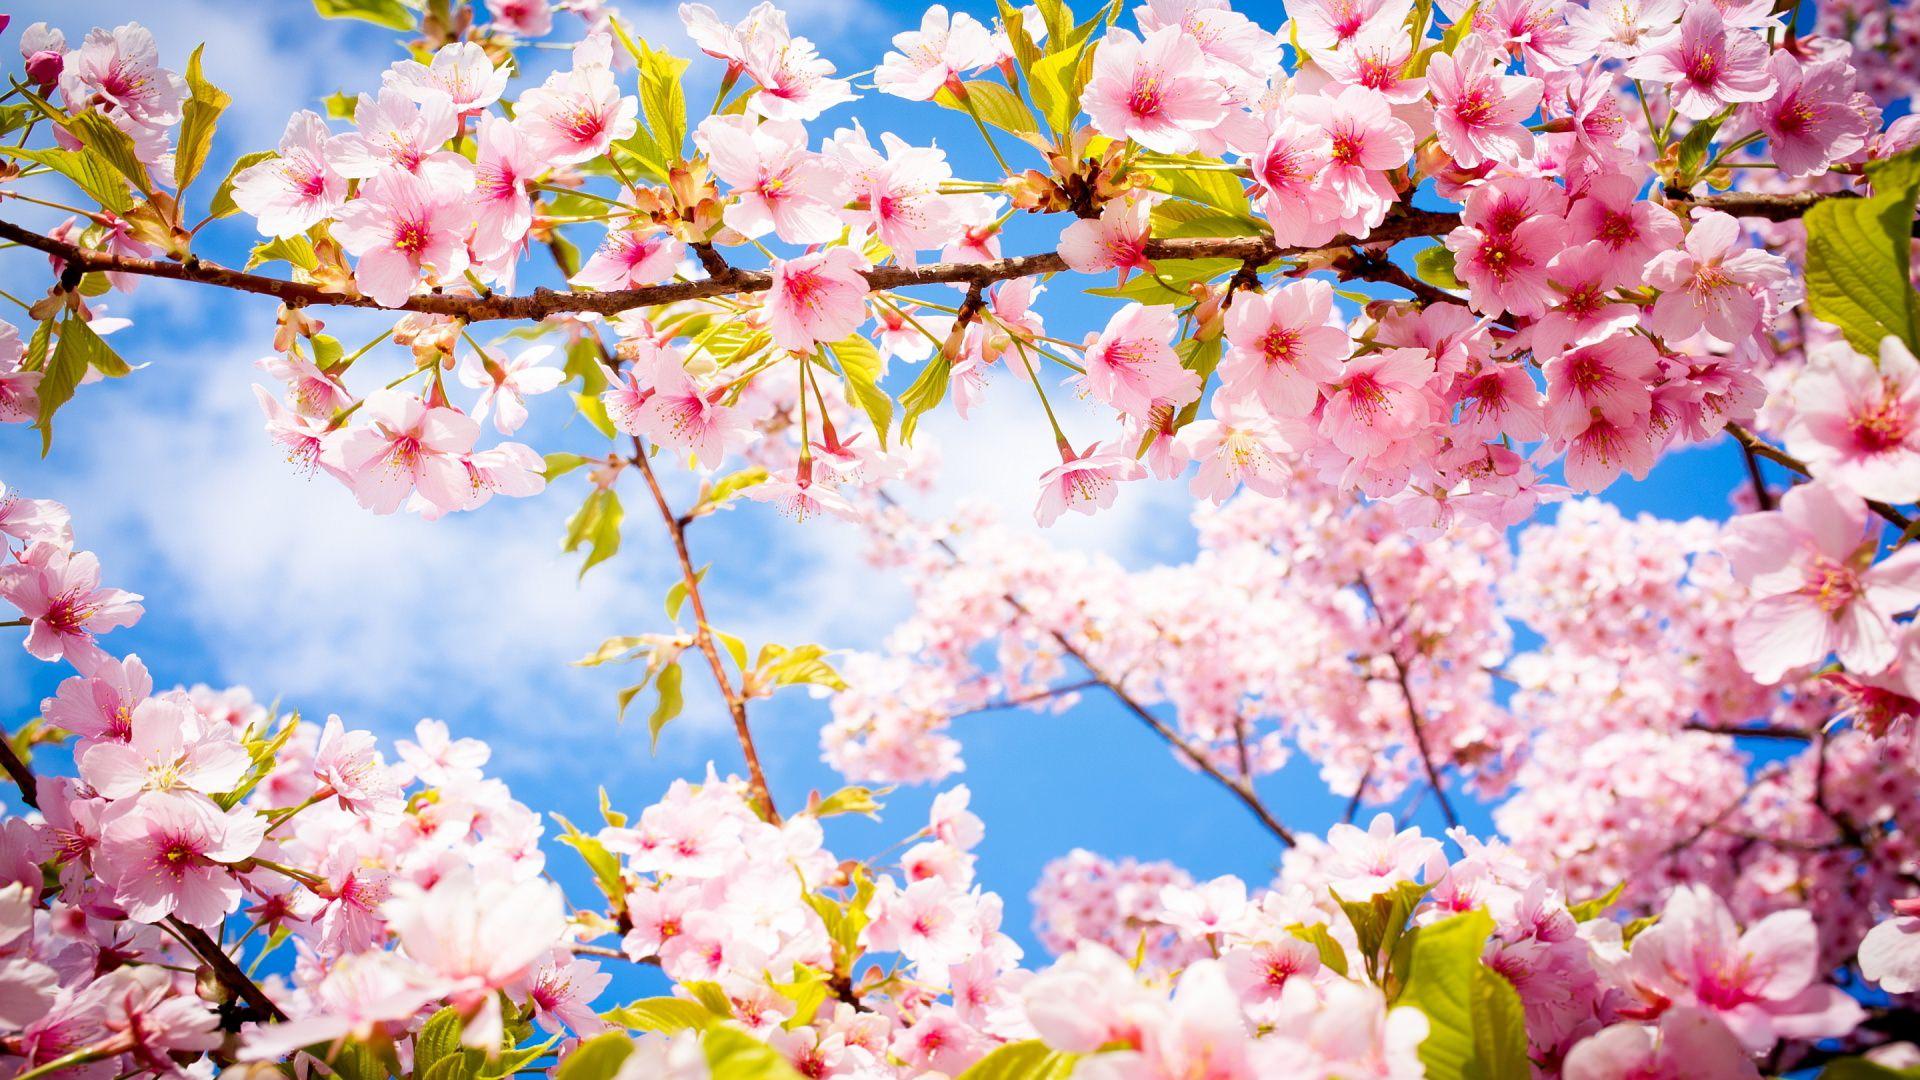 Hình nền HD 1920x1080 Cherry Blossom.  Hình nền HD mới nhất